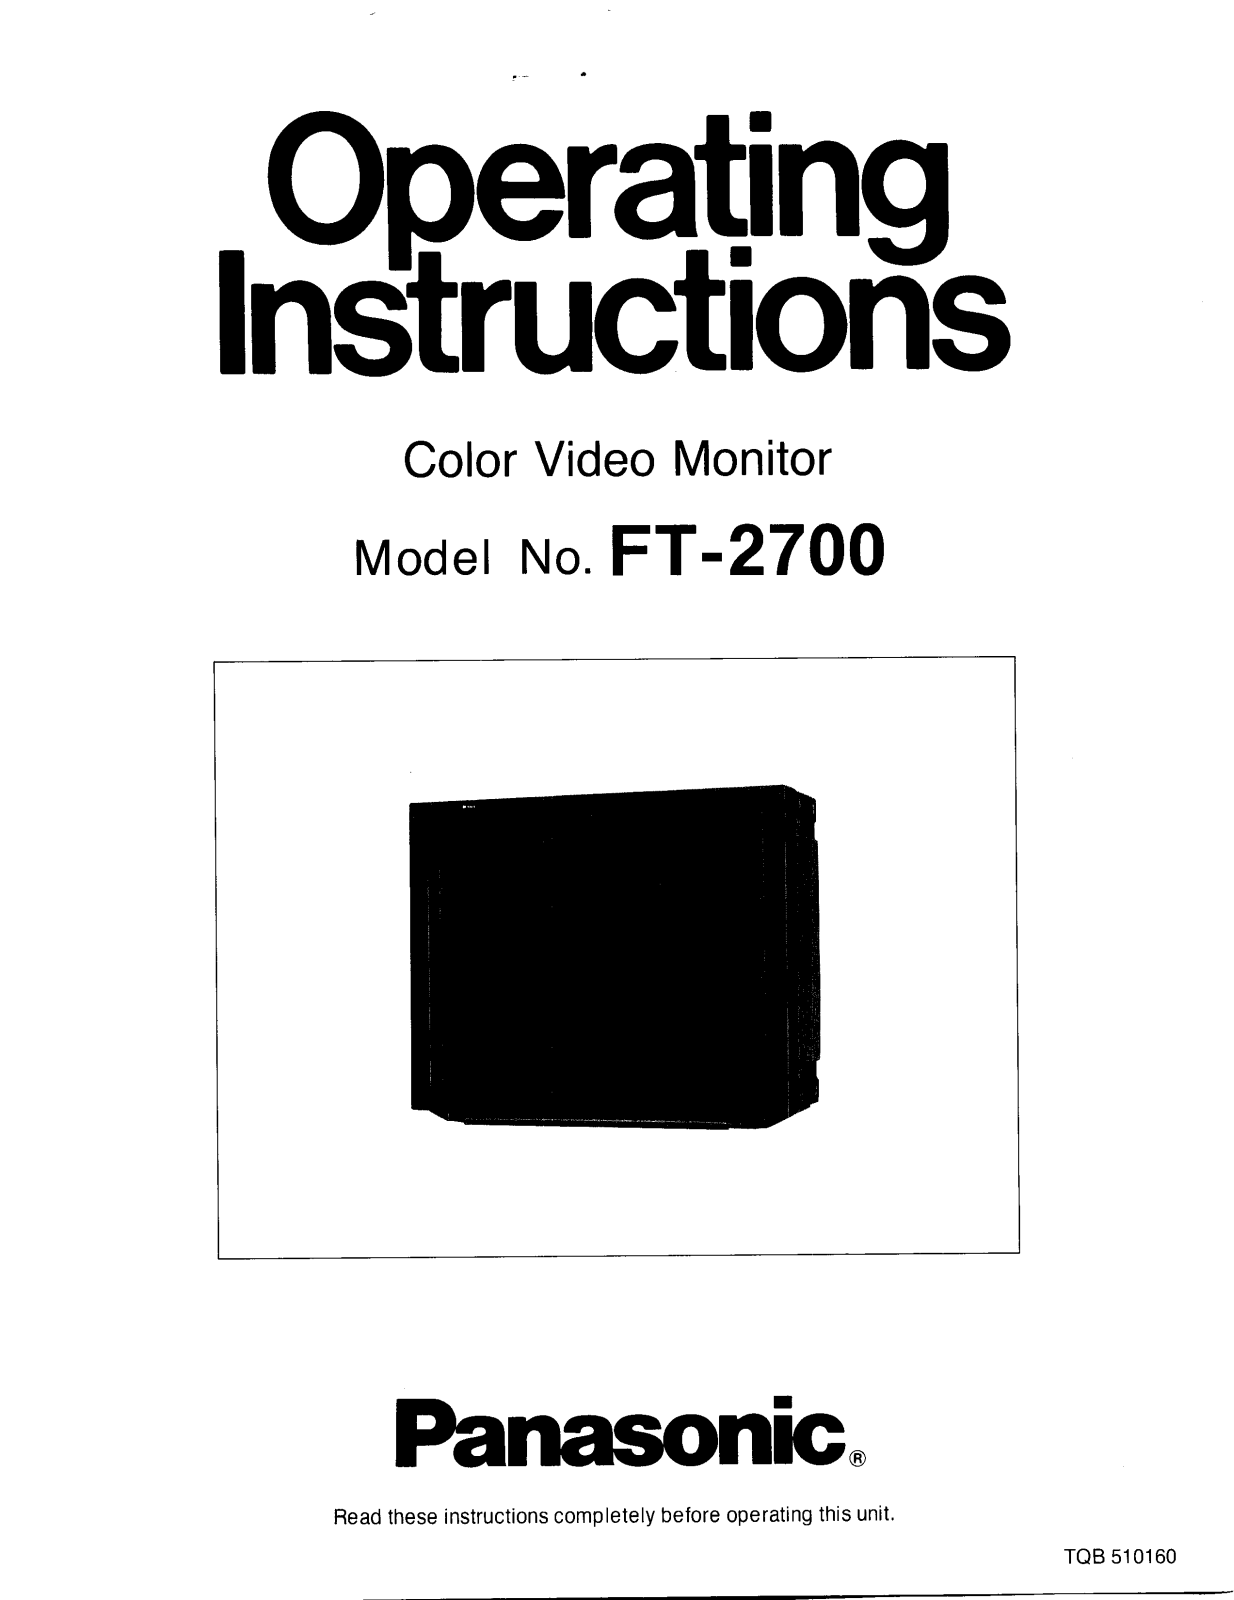 Panasonic ft-2700 Operation Manual